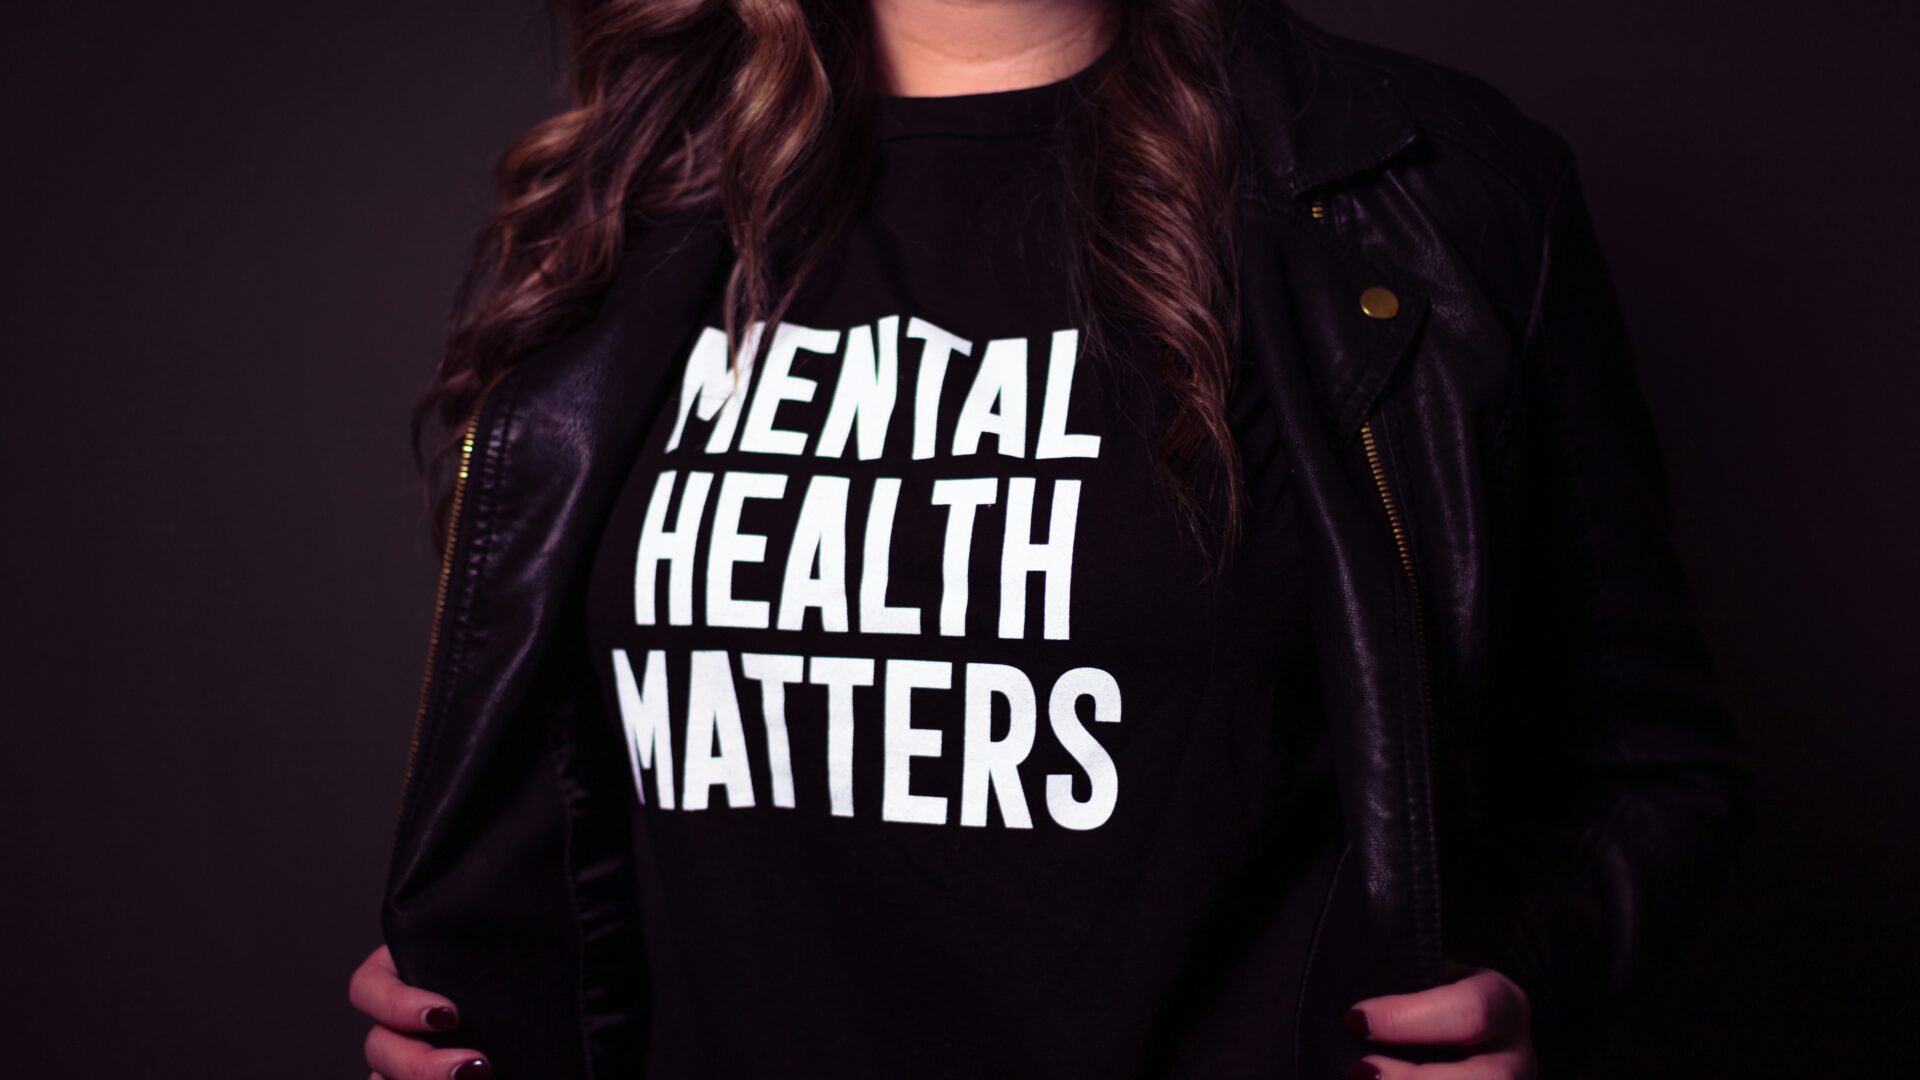 Eine Frau trägt ein T-Shirt mit der Aufschrift "Mental Health Matters".